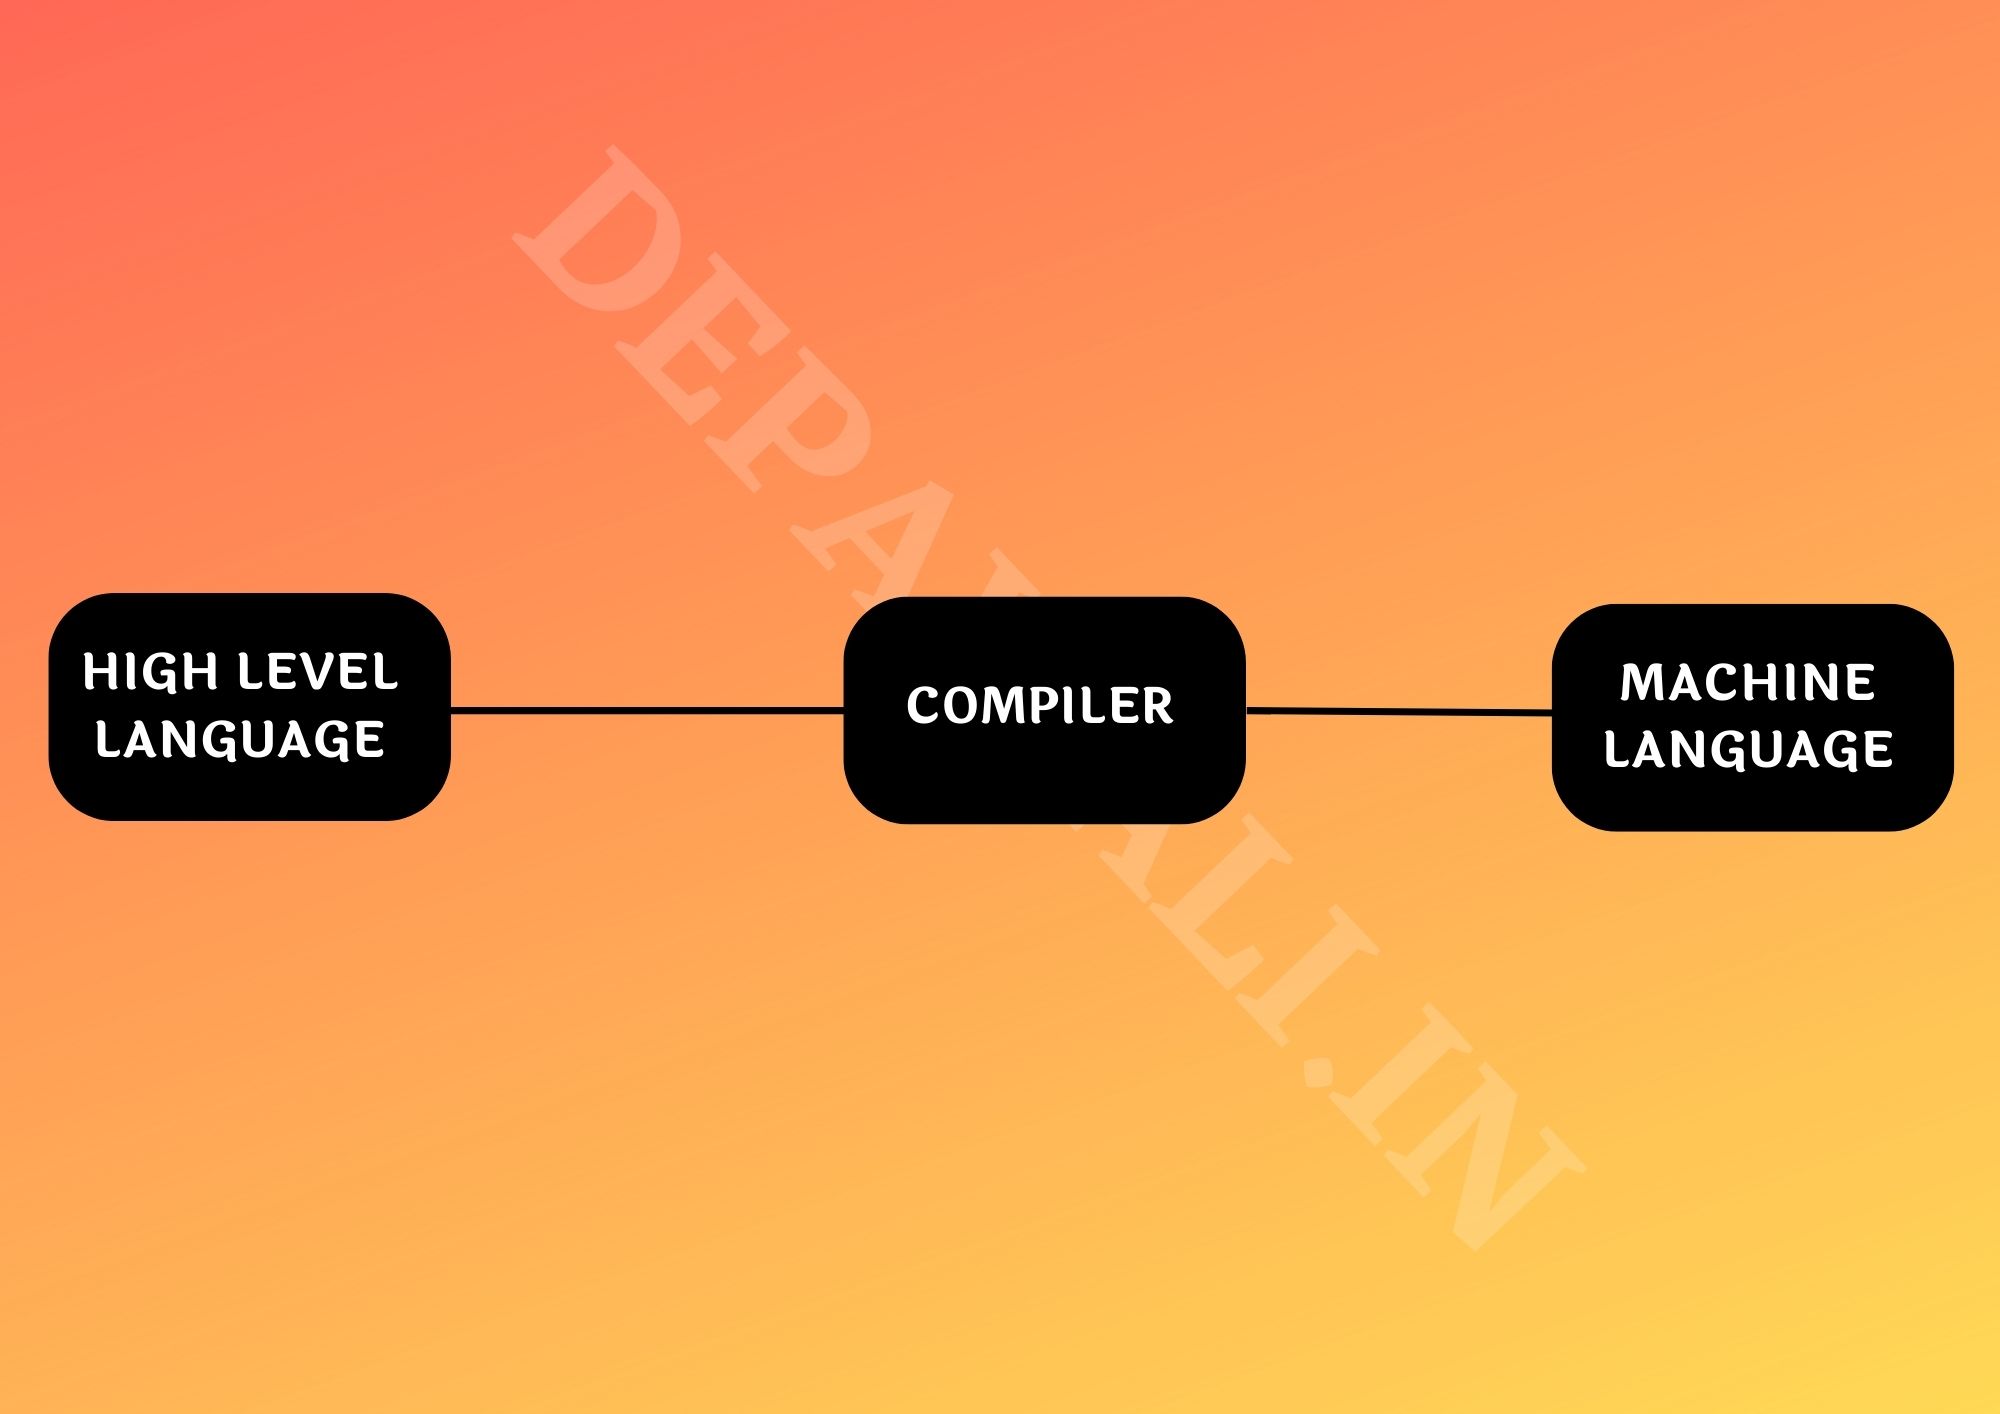 कम्पाइलर क्या है? और कैसे काम करता है - Compiler Meaning In Hindi